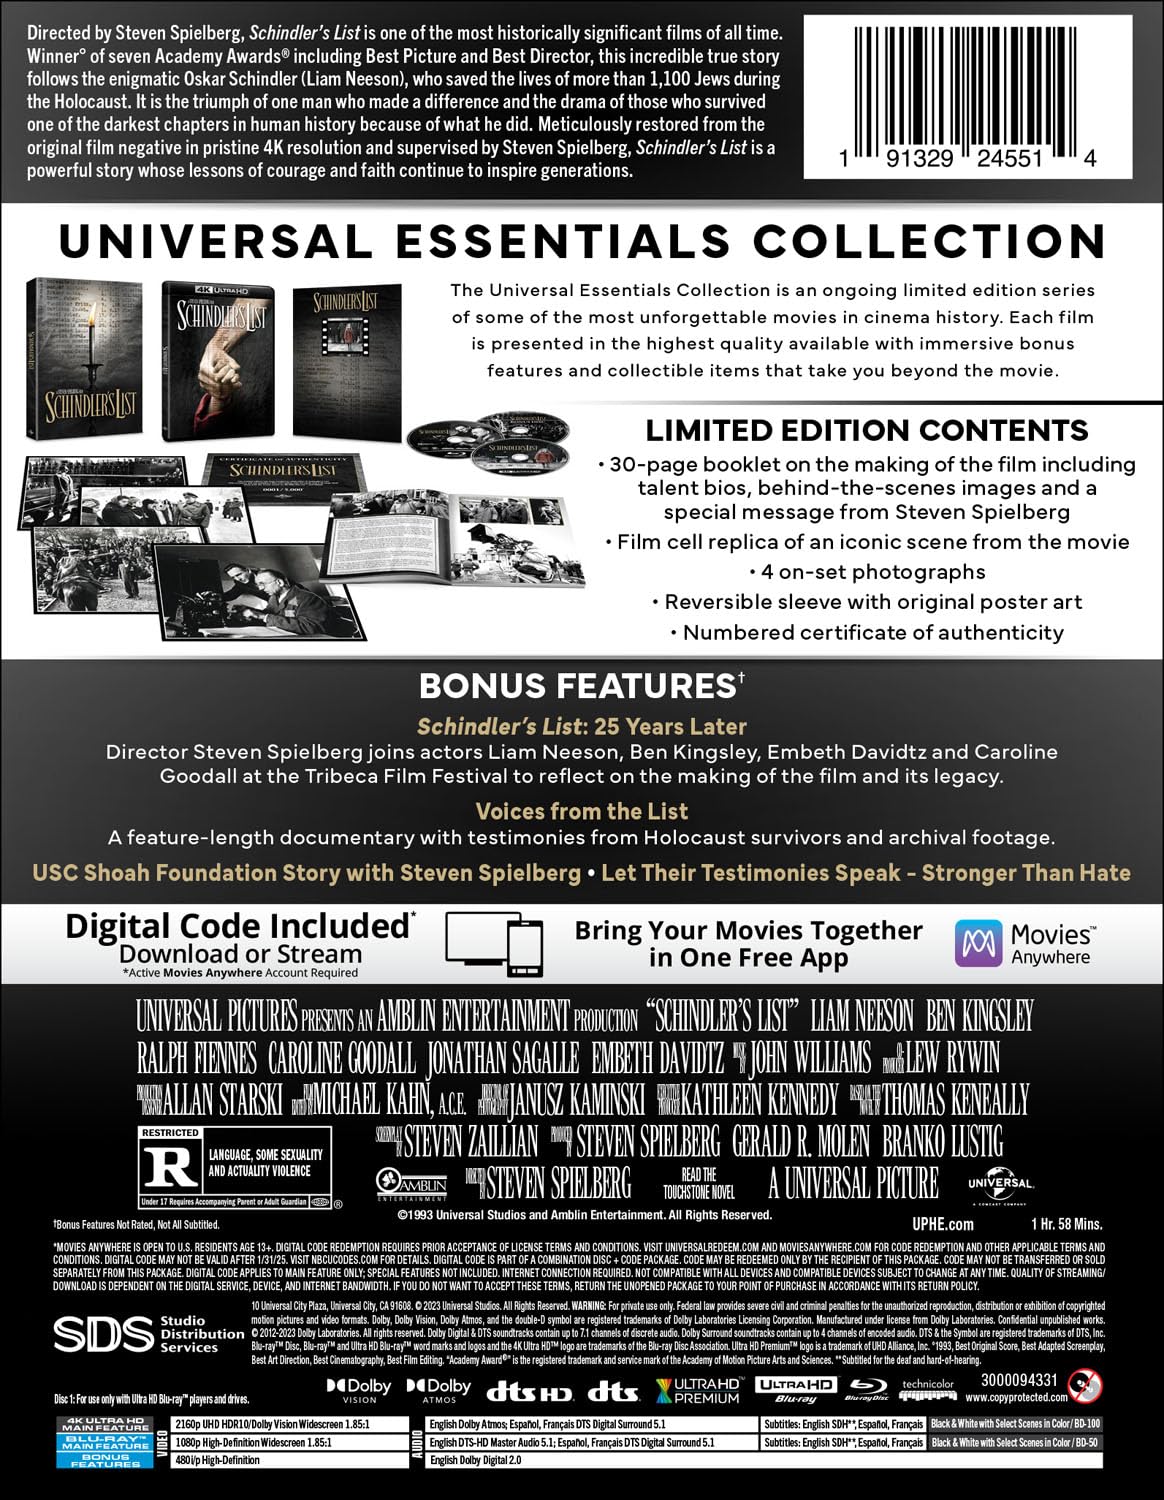 Список Шиндлера [30th Anniversary] (англ. язык) (4K UHD + Blu-ray) Universal Essentials Collection